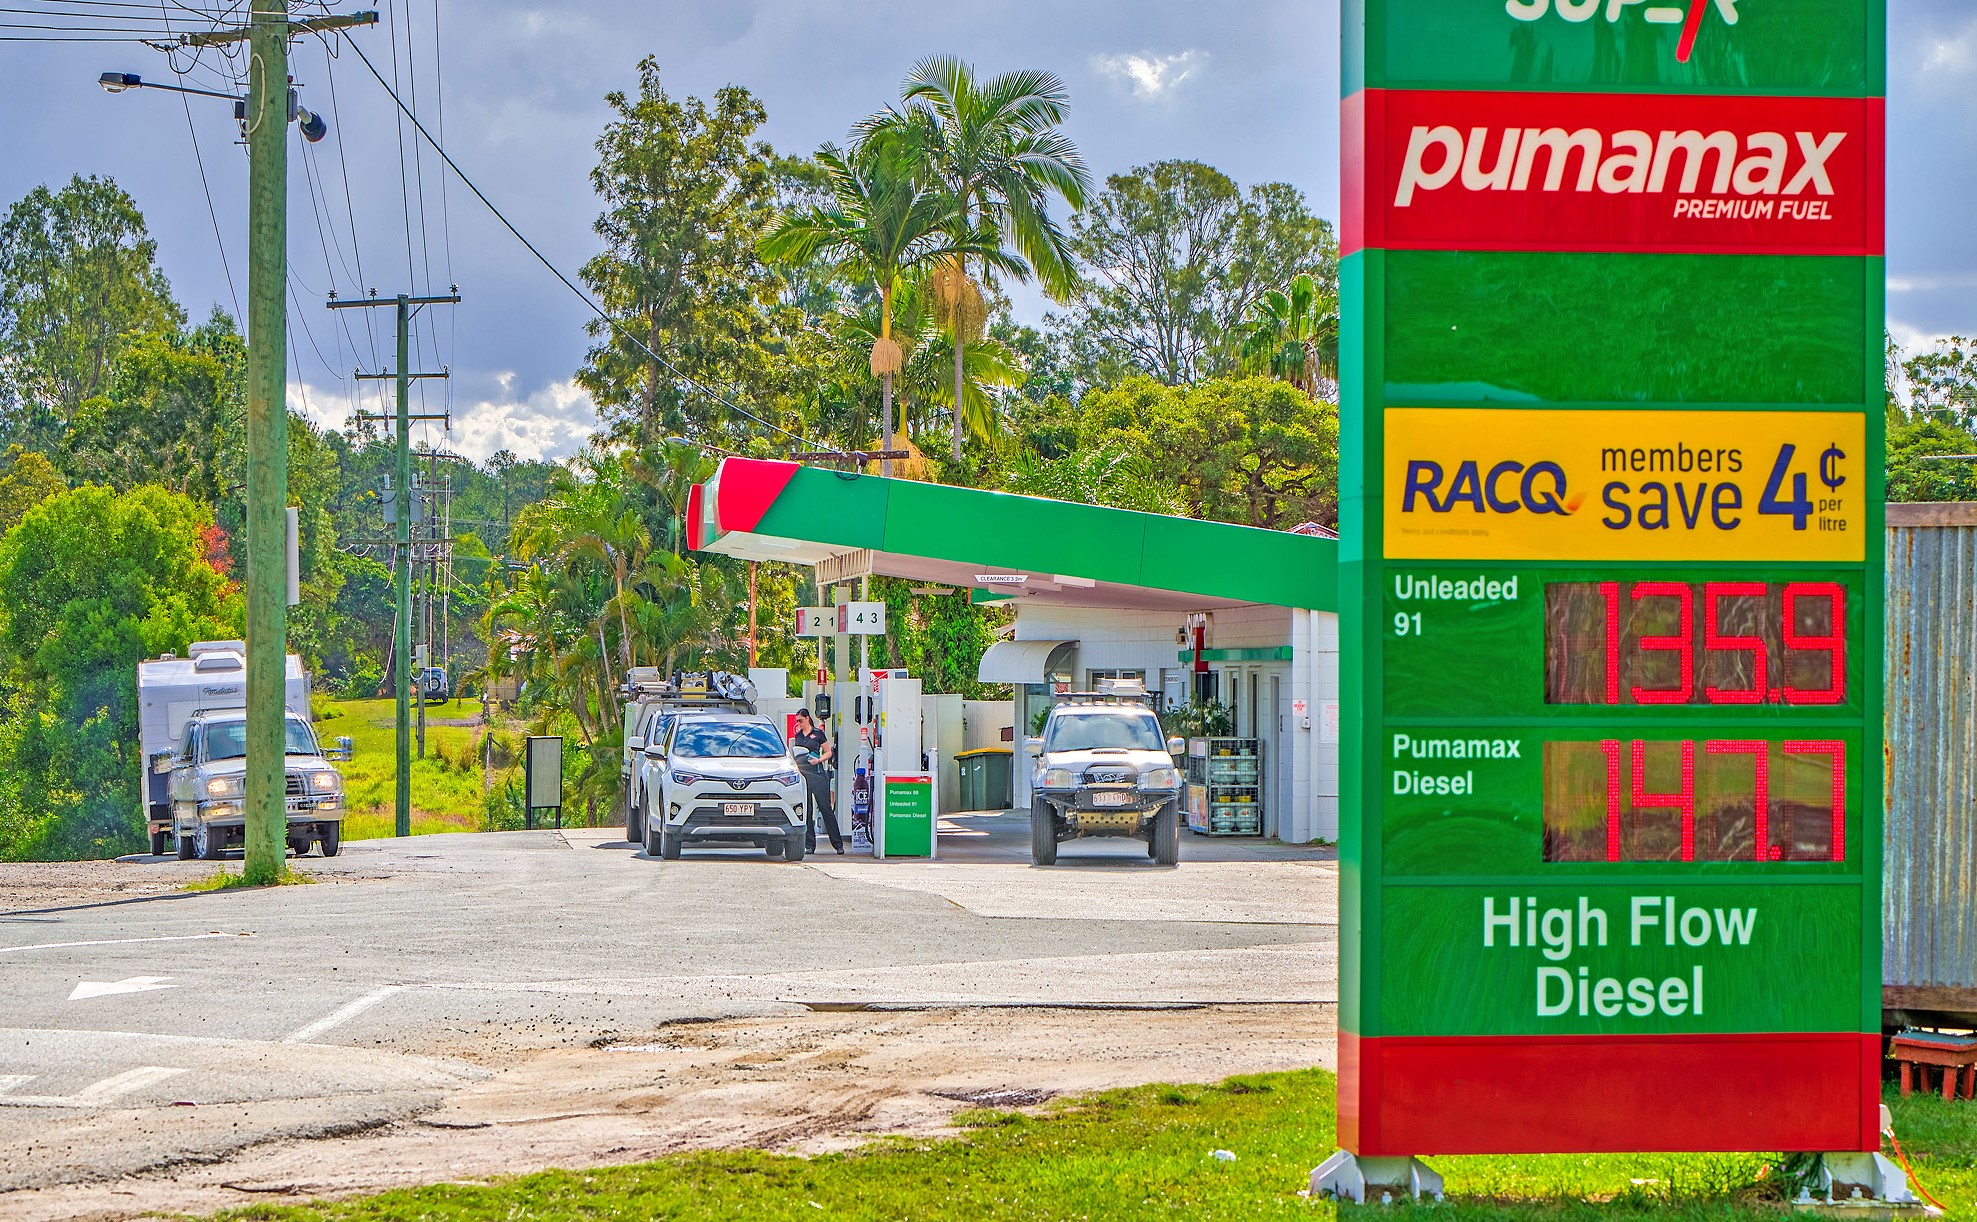 puma fuel racq discount